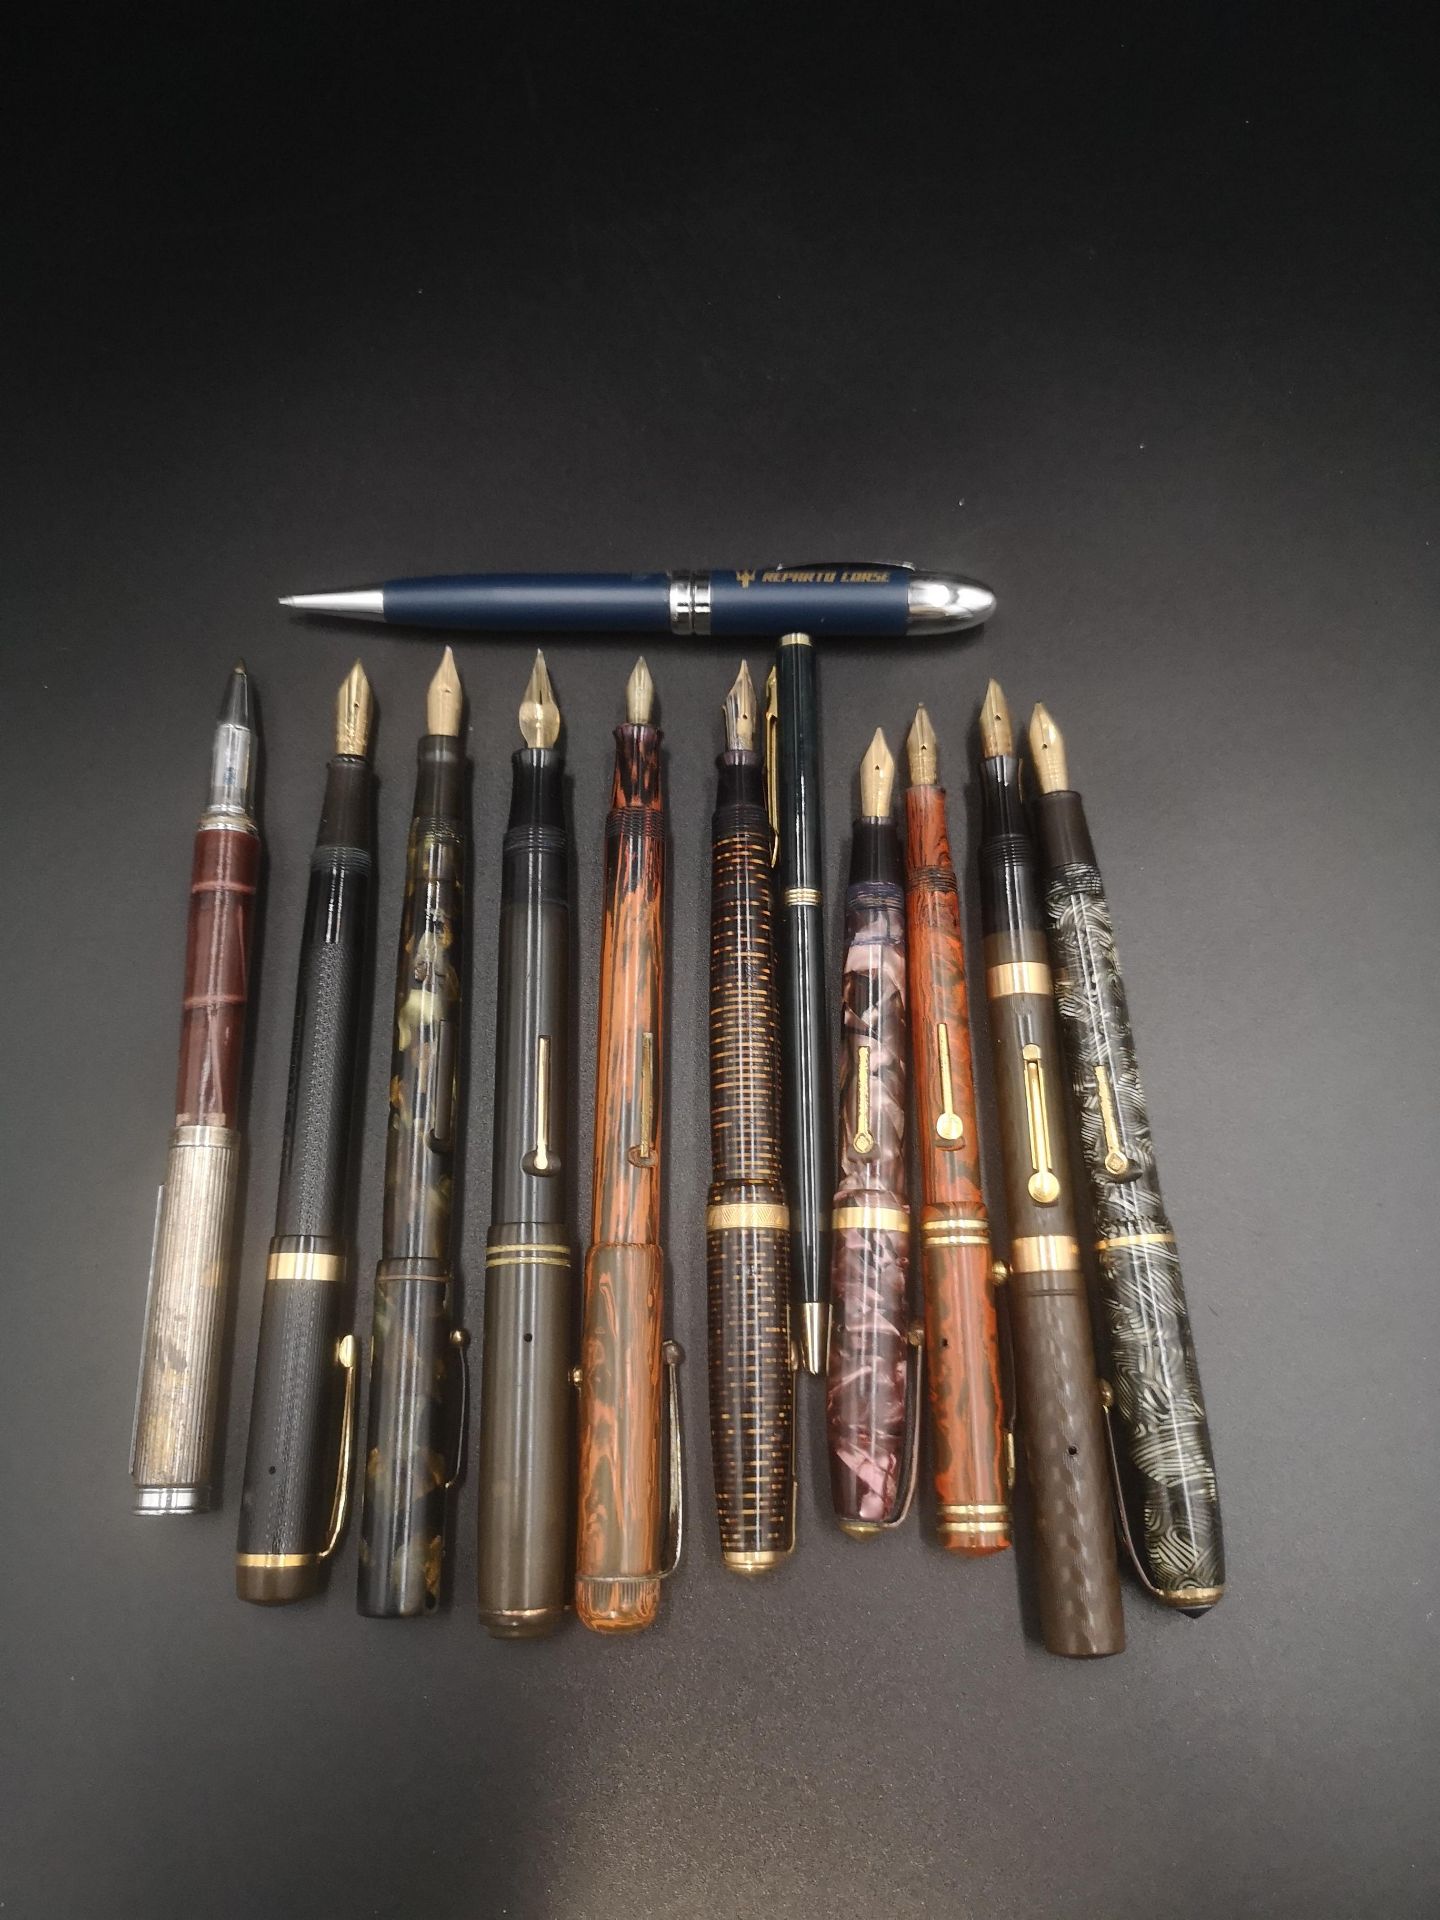 Collection of ten fountain pens